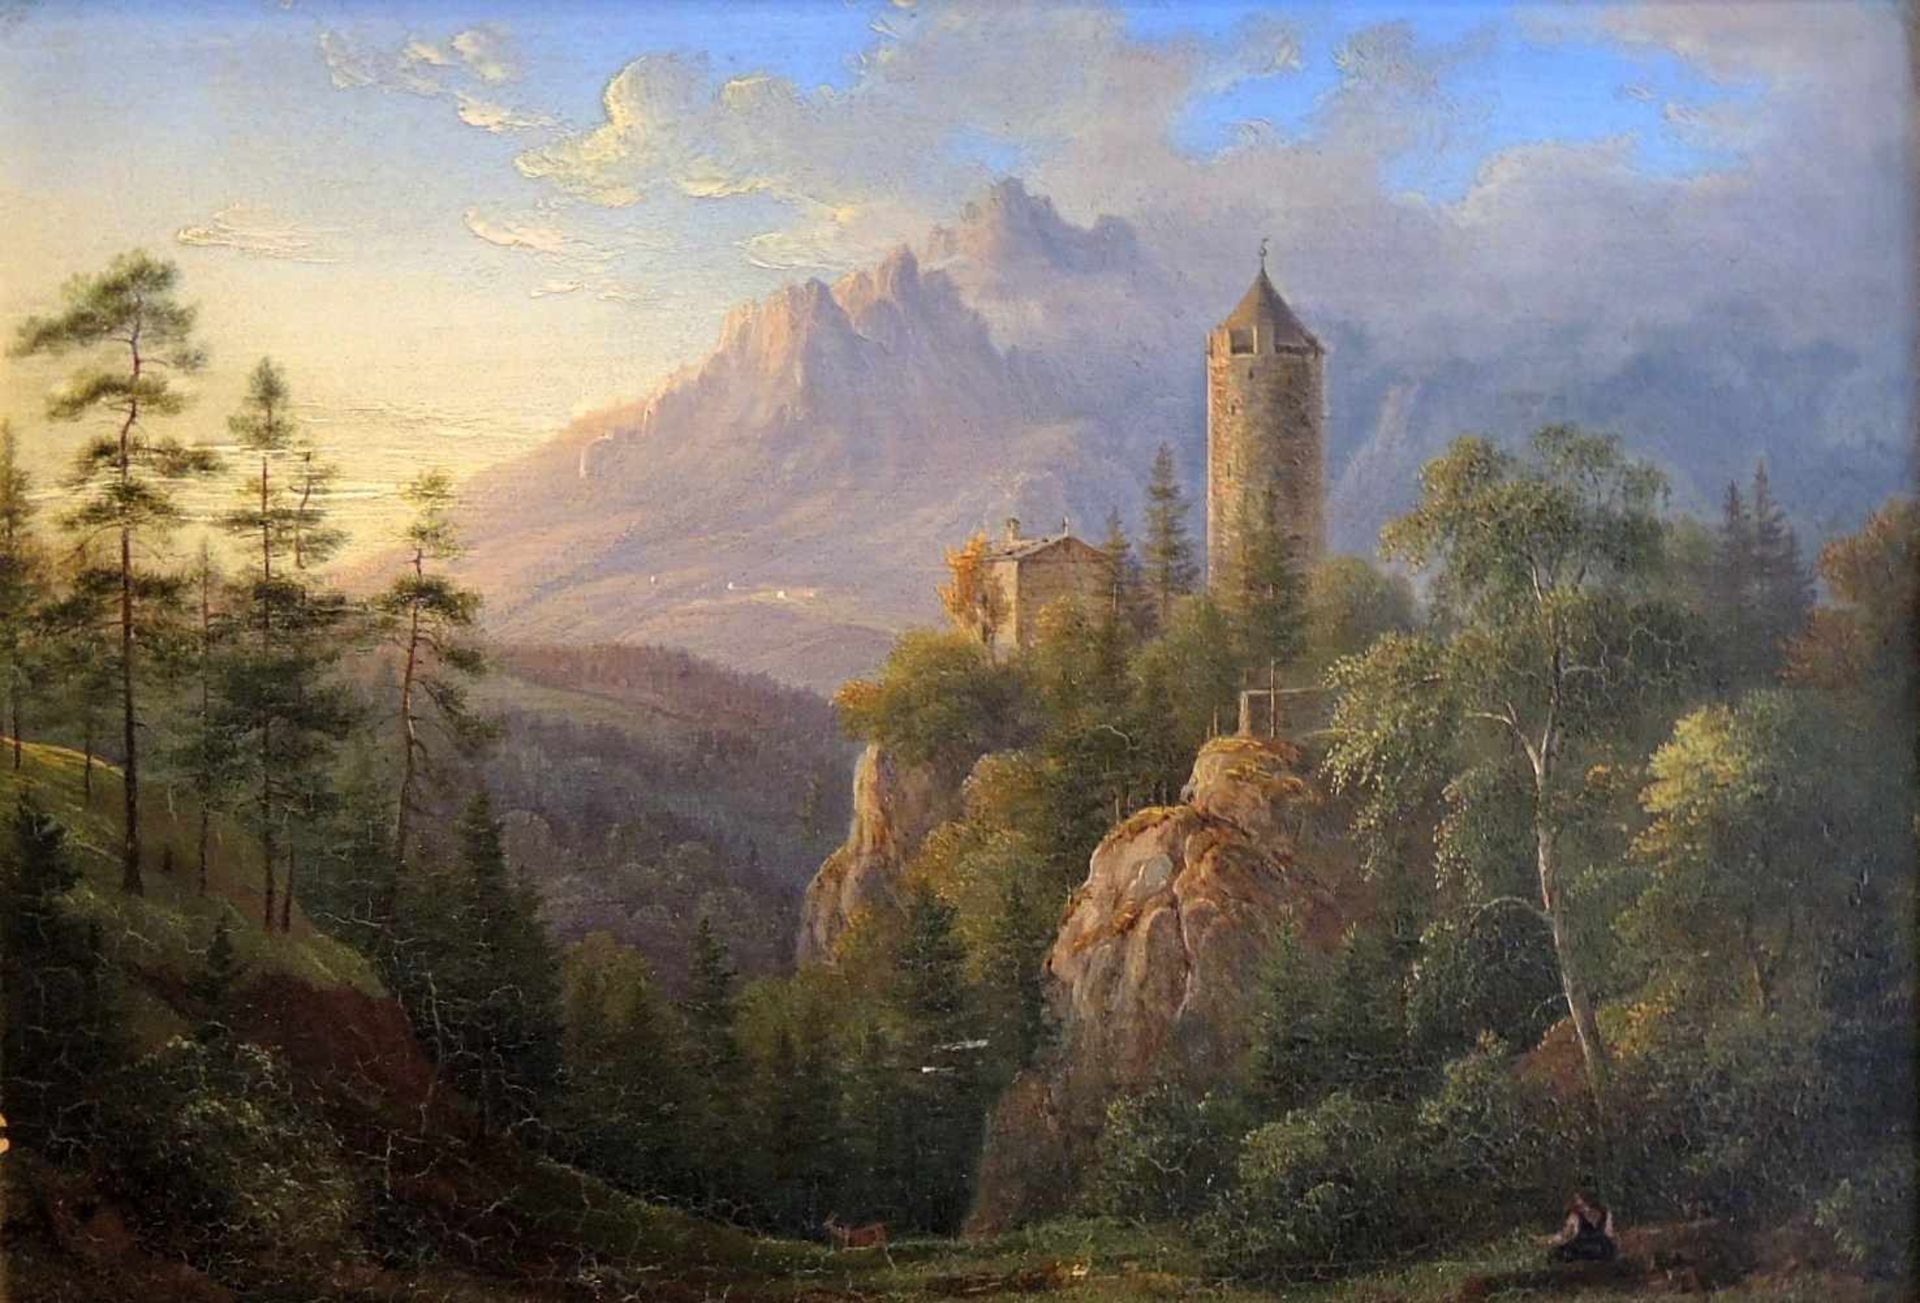 Mittelalterliche Burg vor entferntem GebirgeÖl/Holz. Romantisch anmutende Burg mit umgebender